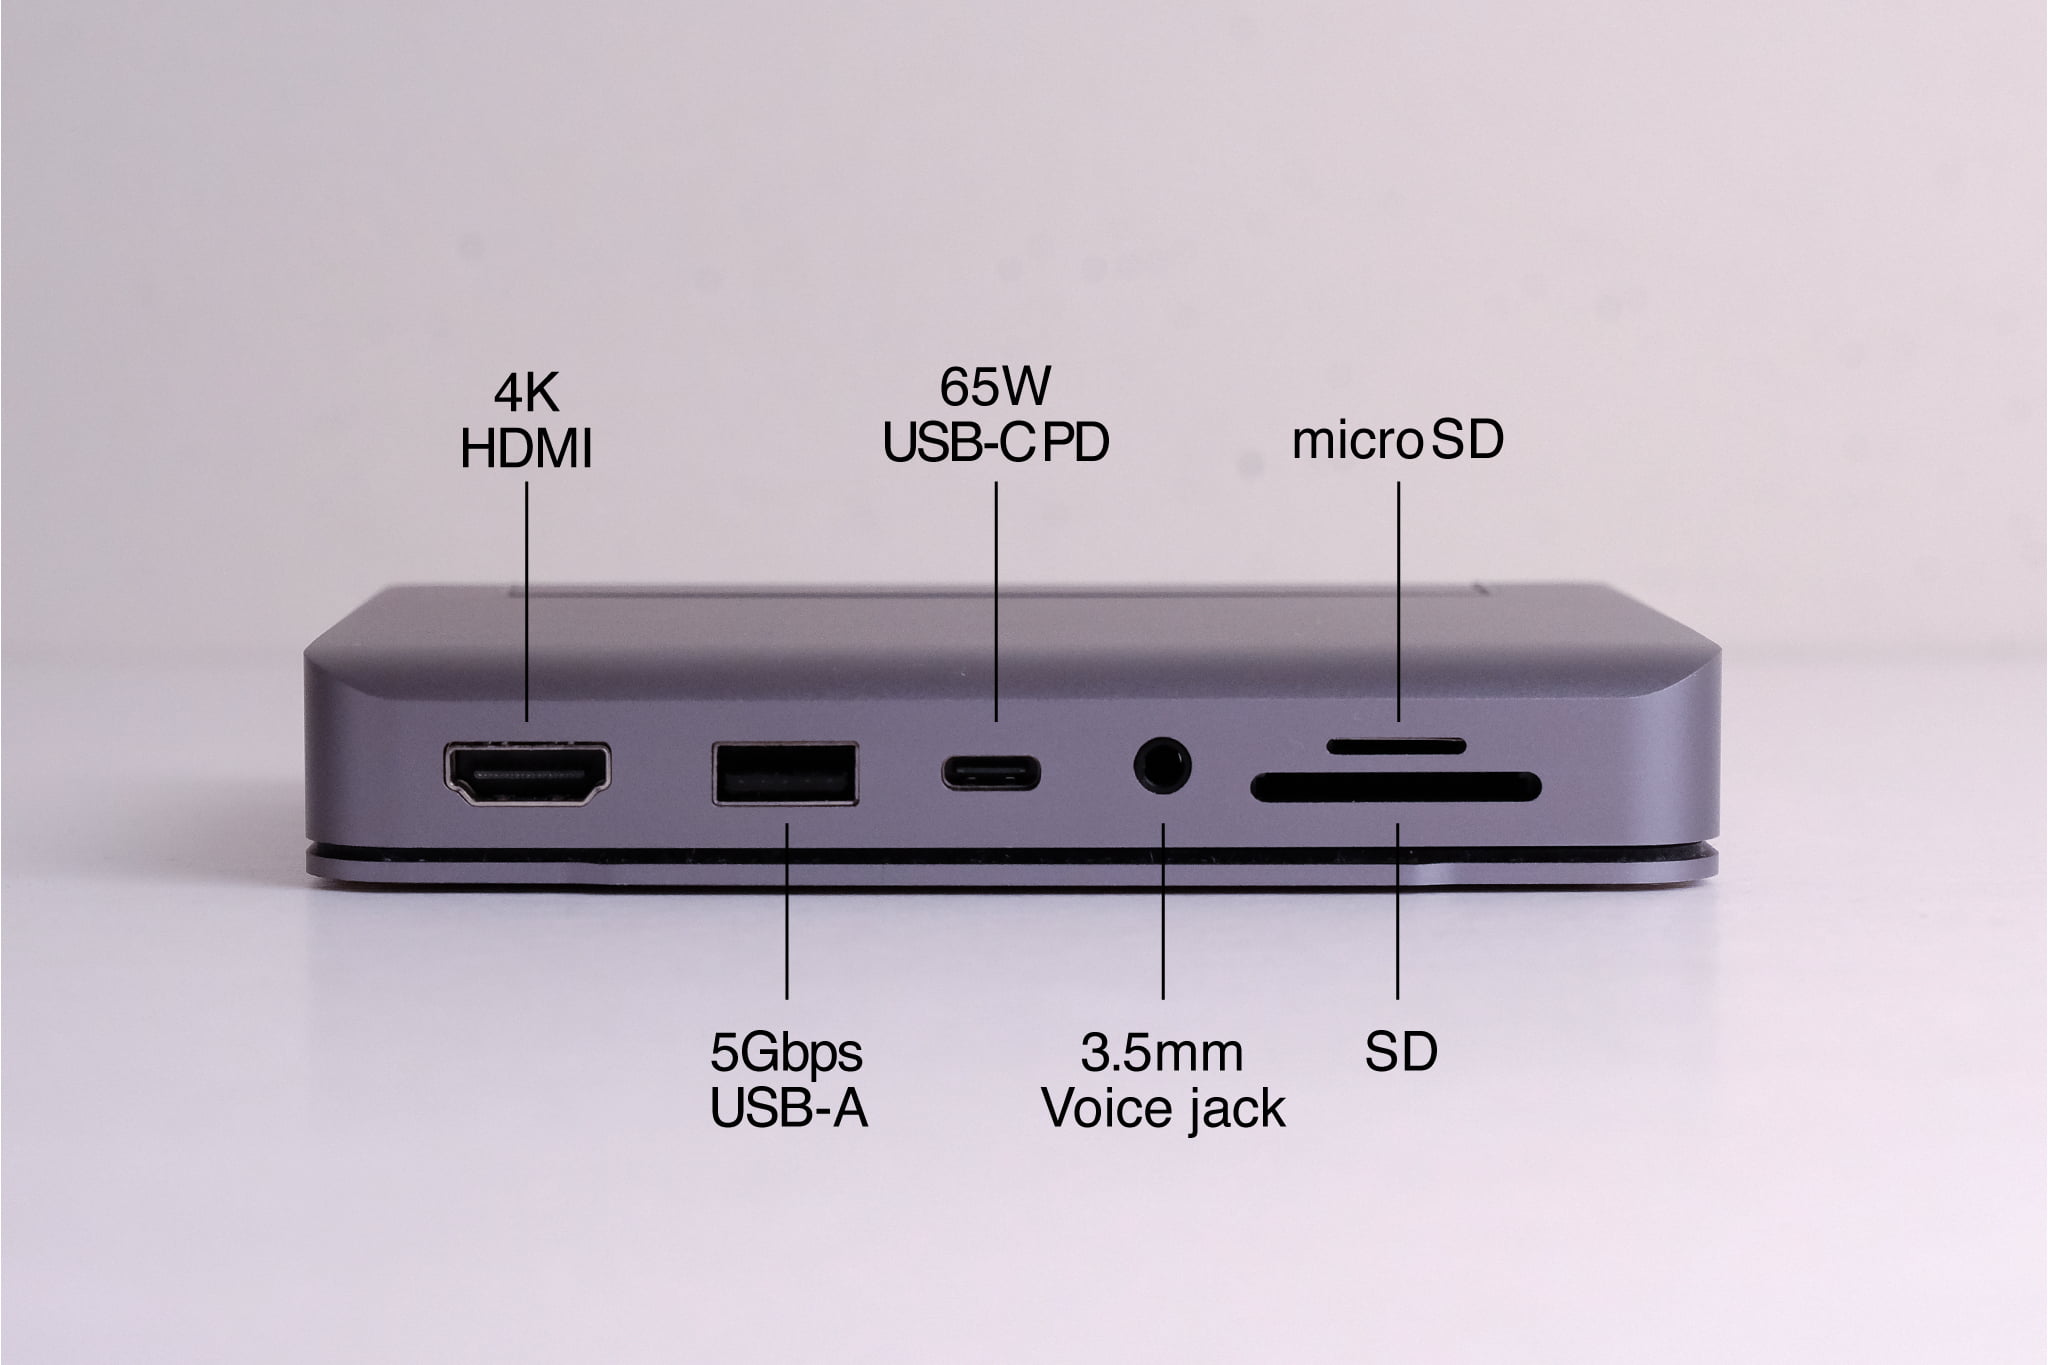 SATECHIのiPad用 アルミニウム スタンド＆ハブ｜5つの特徴　特徴2：必要十分な6ポートを装備　1：最大60WのUSB-C PD充電専用ポート
2：最大60Hzの4K HDMI
3：5GbpsのUSB-A データポート
4：最大104MB/秒のSDカードリーダー（SD）
5：最大104MB/秒のSDカードリーダー（micro SD）
6：3.5mm音声ジャック（出入力可能）